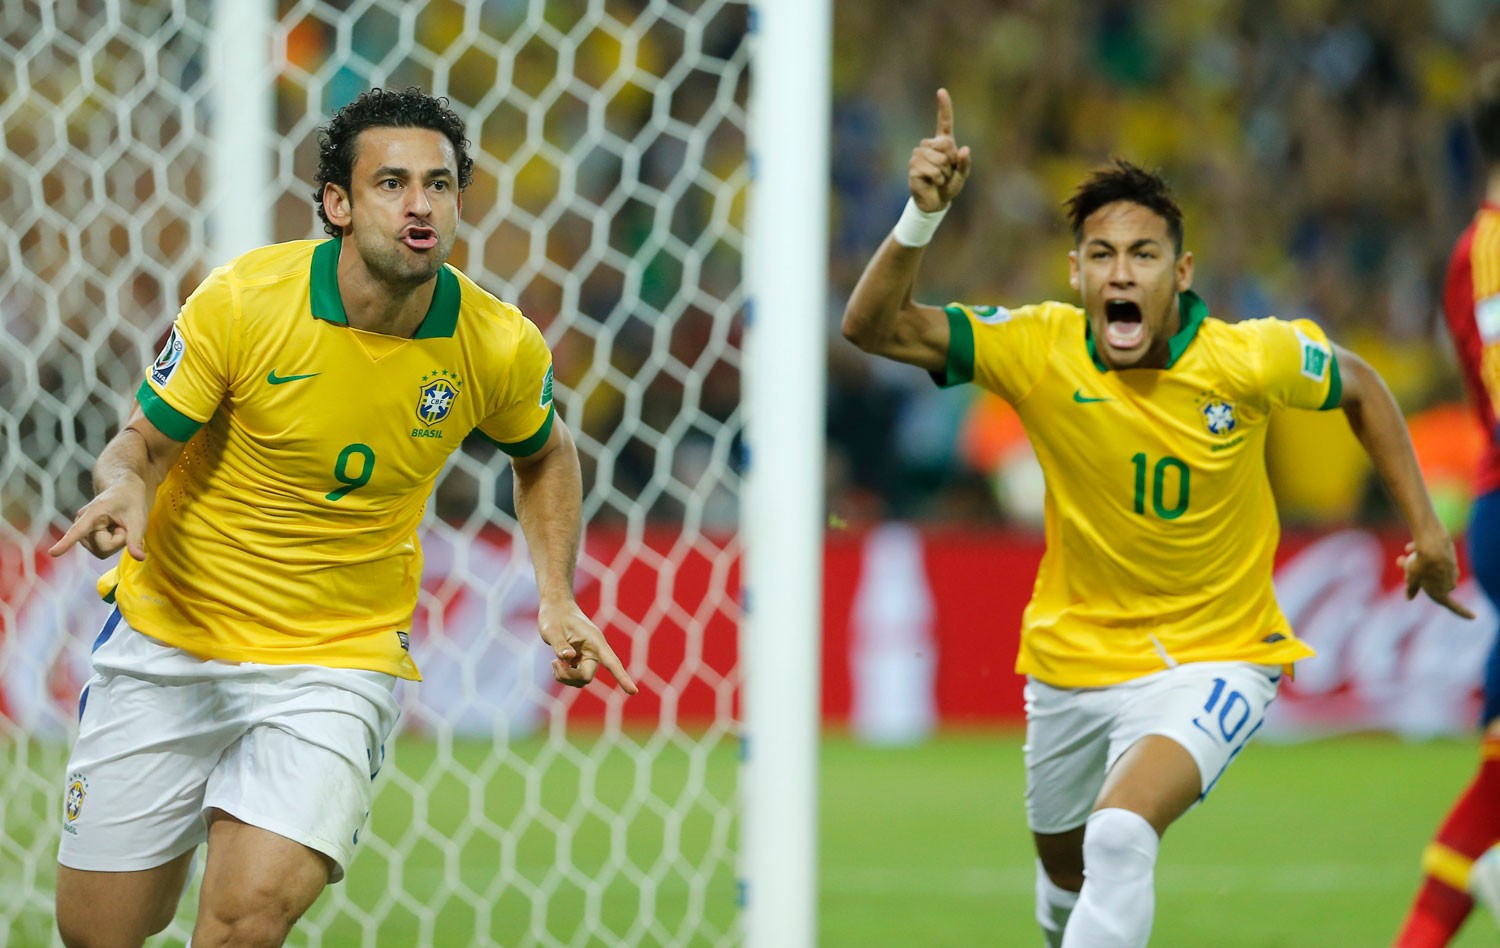 O'Malley's transmite o jogo do Brasil x Espanha pela final da Copa das  Confederações